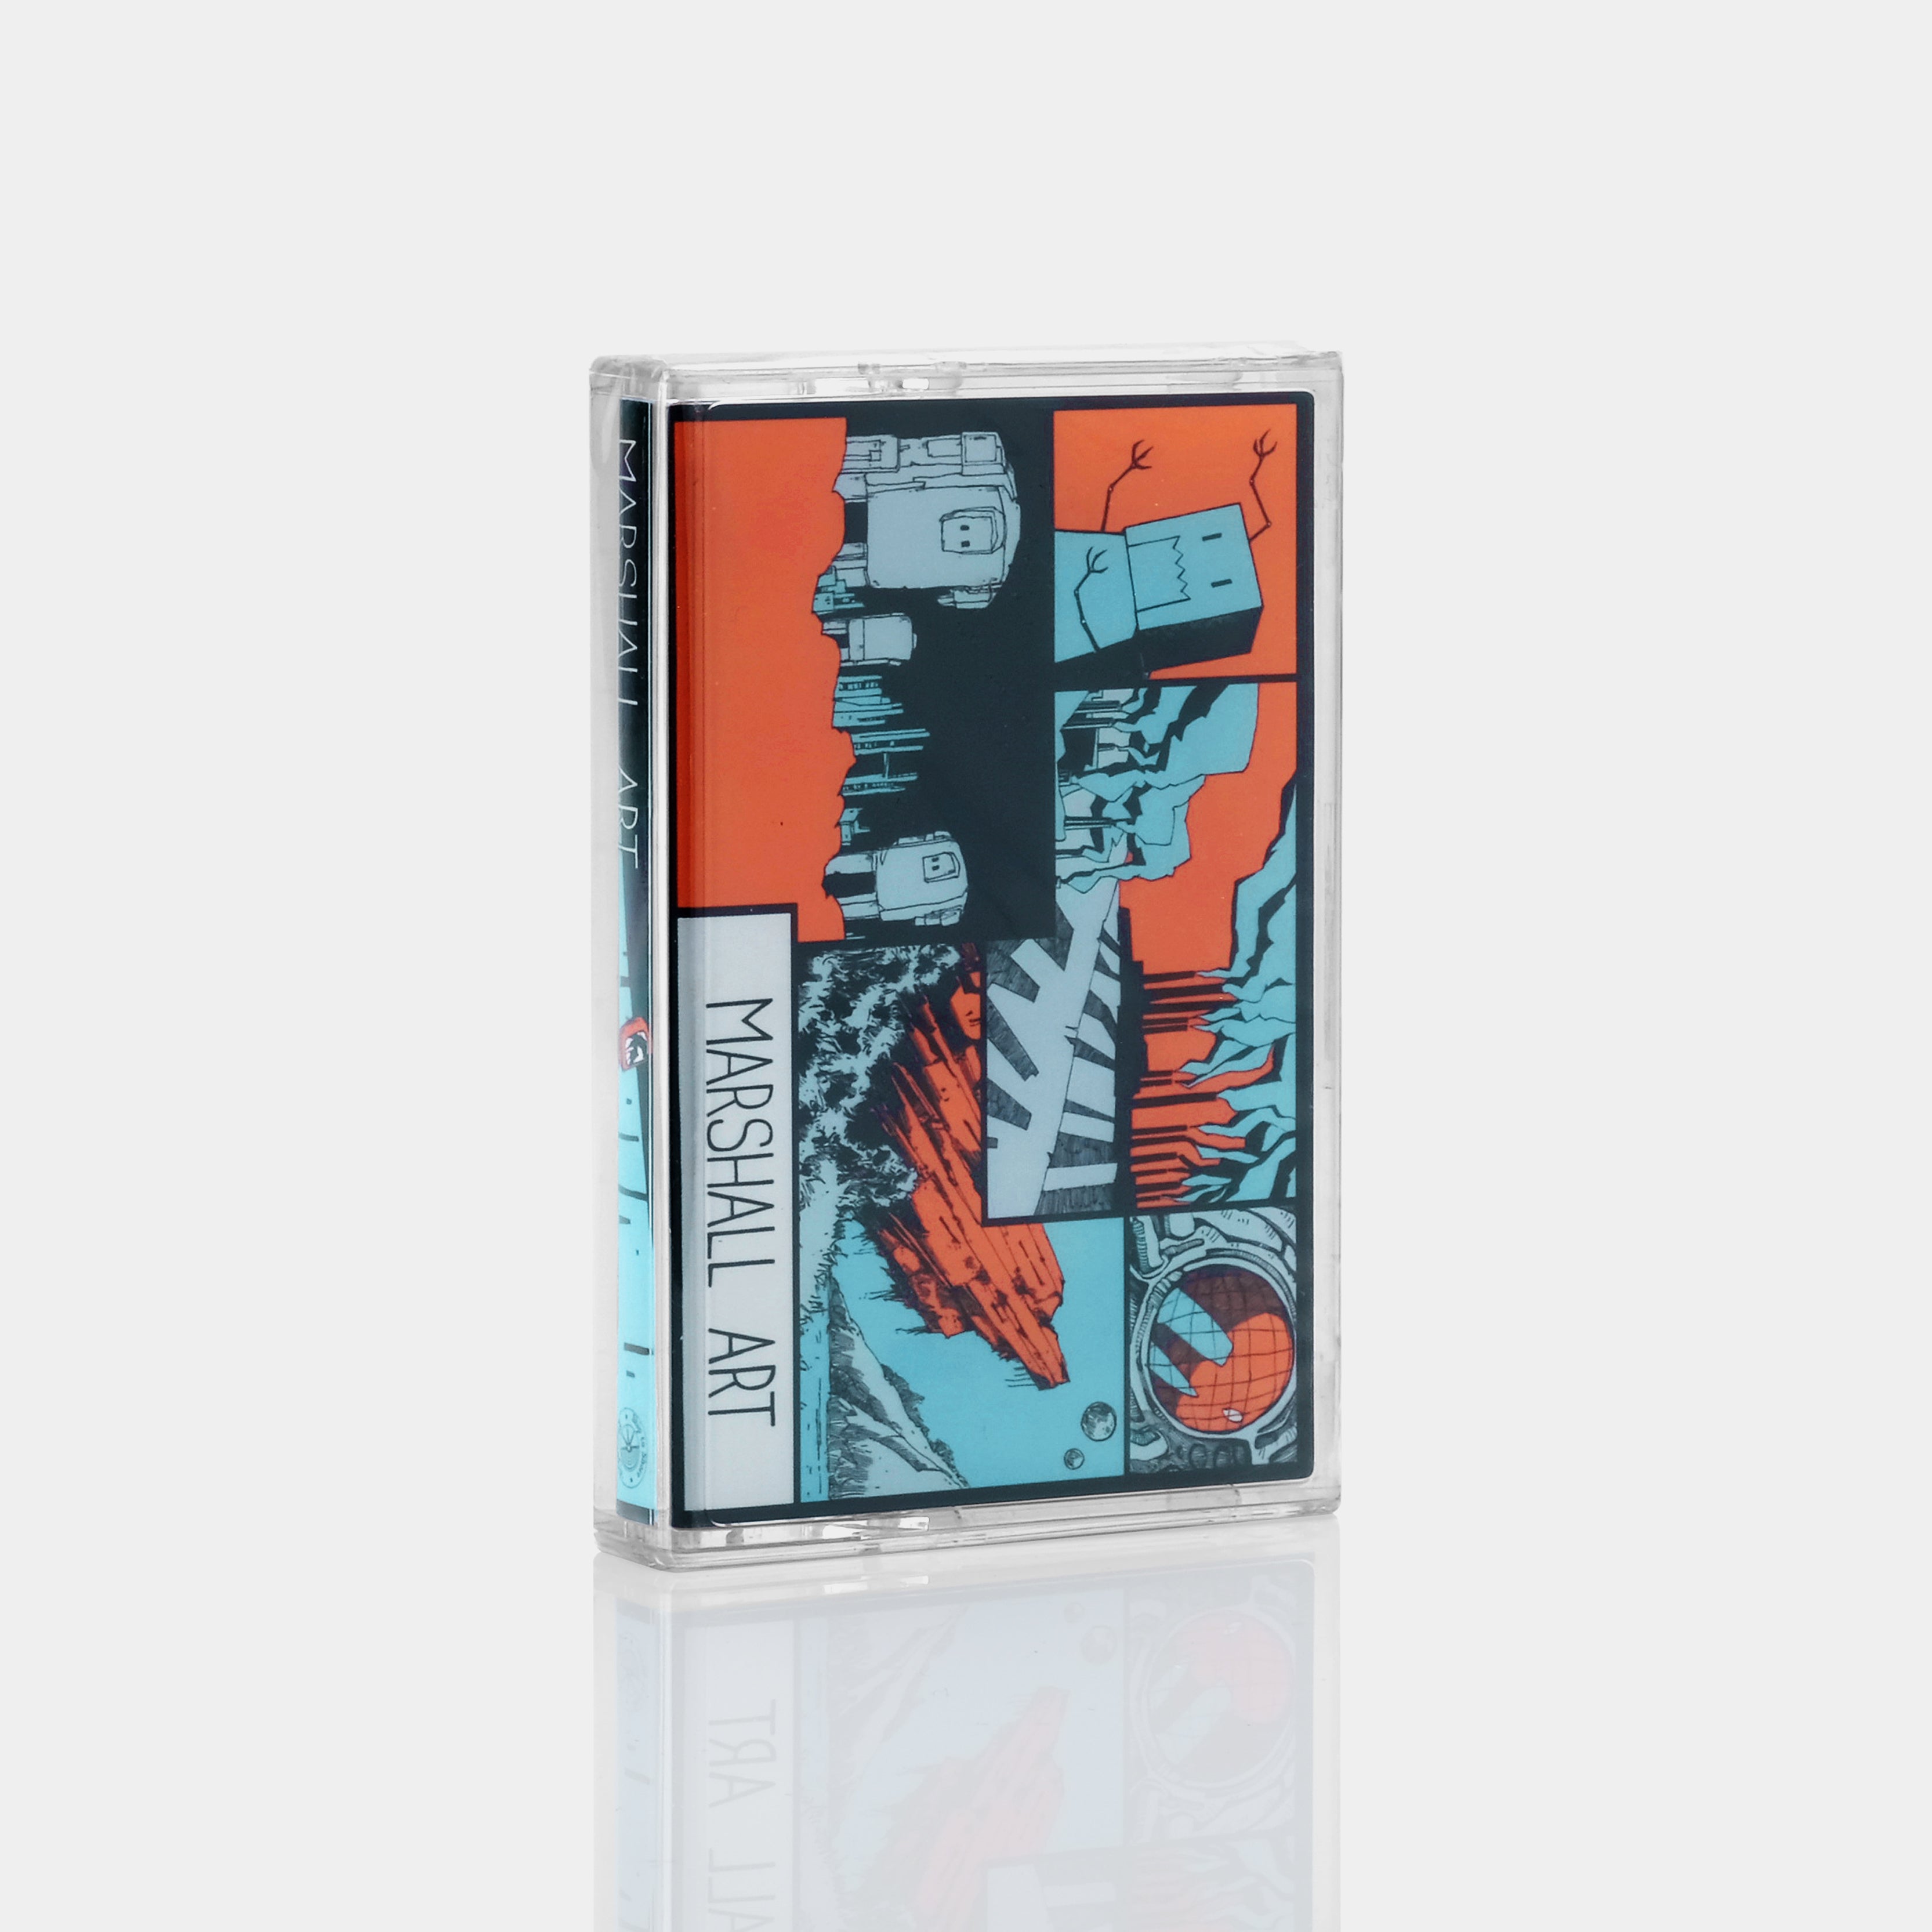 Marshall Art - Marshall Art Cassette Tape